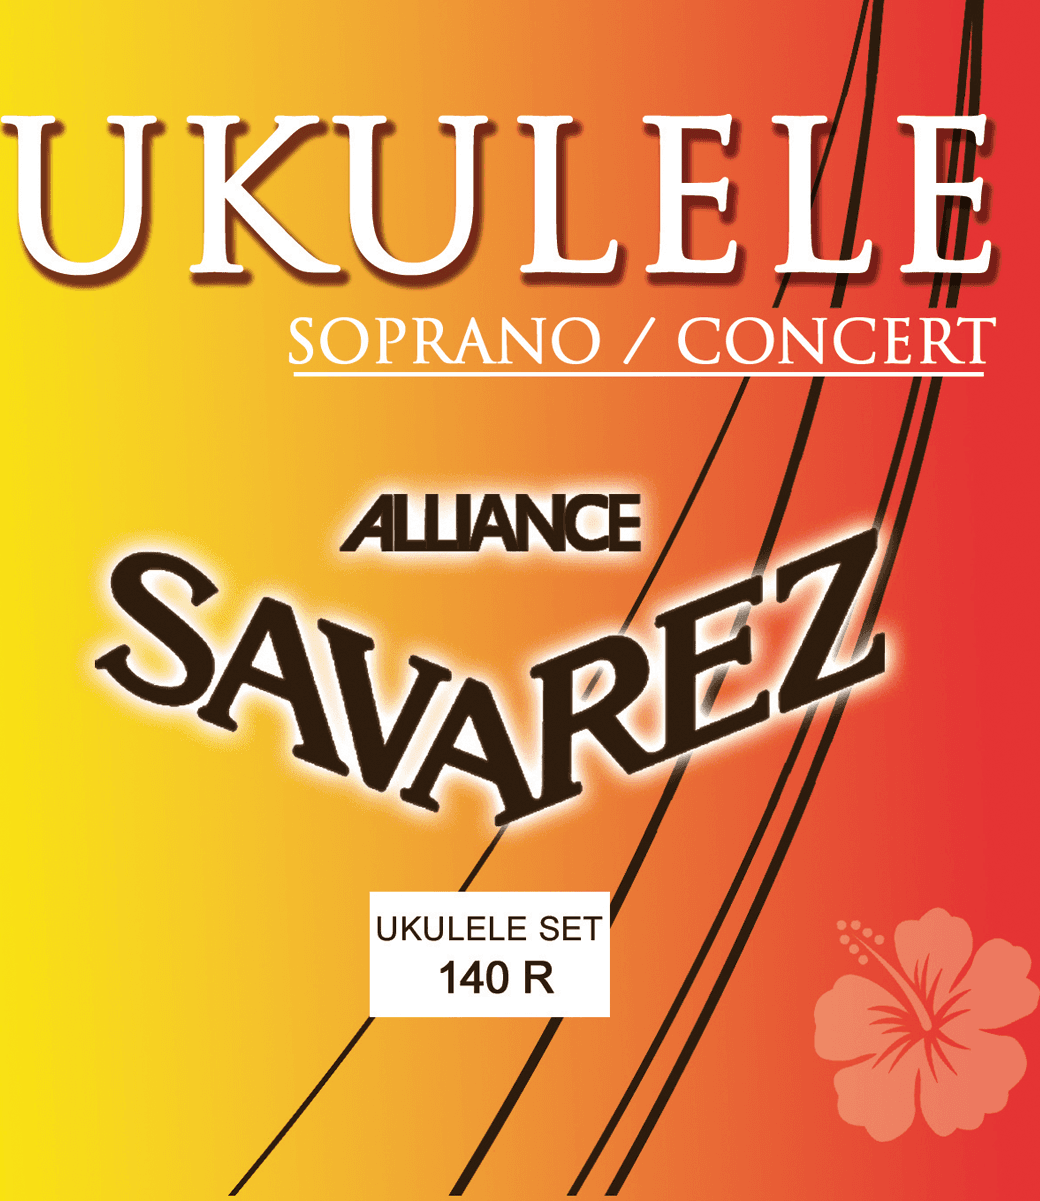 Savarez Ukulele Soprano Concert Alliance 140r - Ukulele strings - Main picture